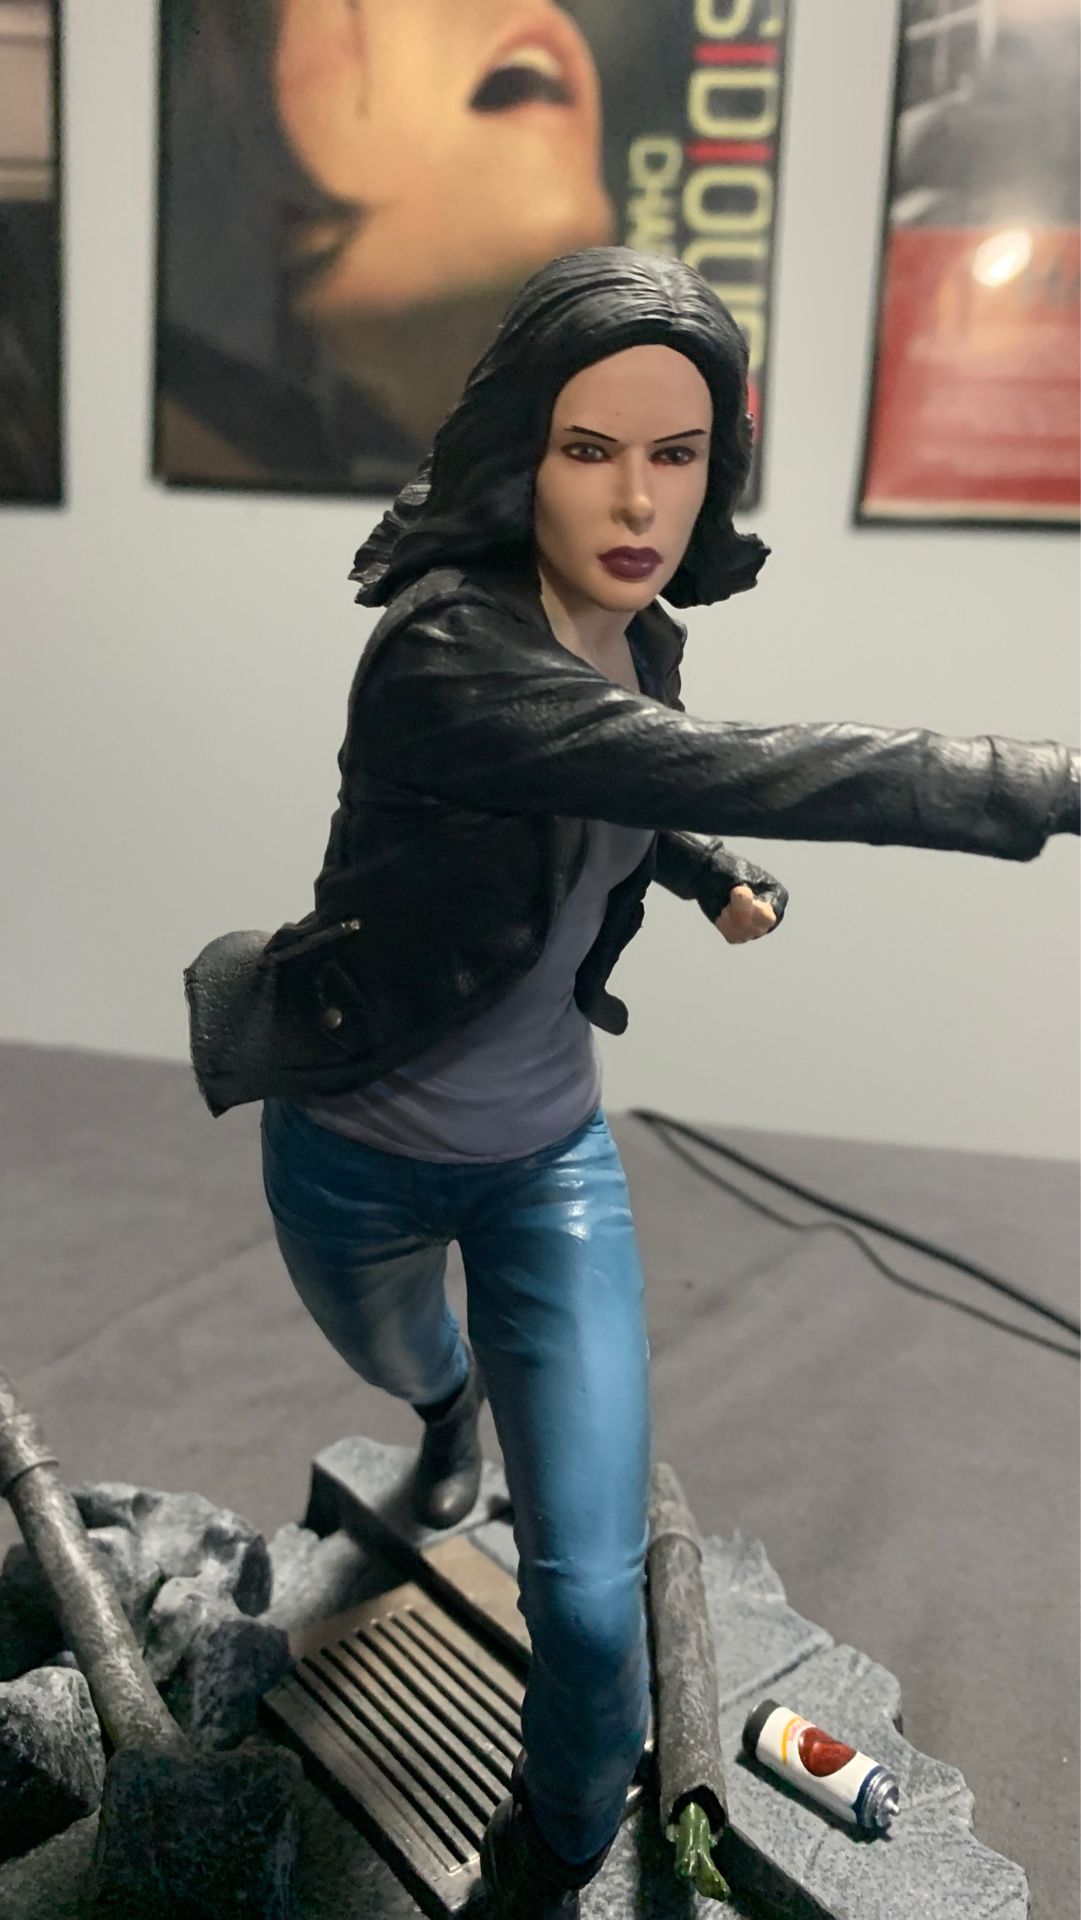 Marvel’s Netflix Jessica Jones Collectible statue